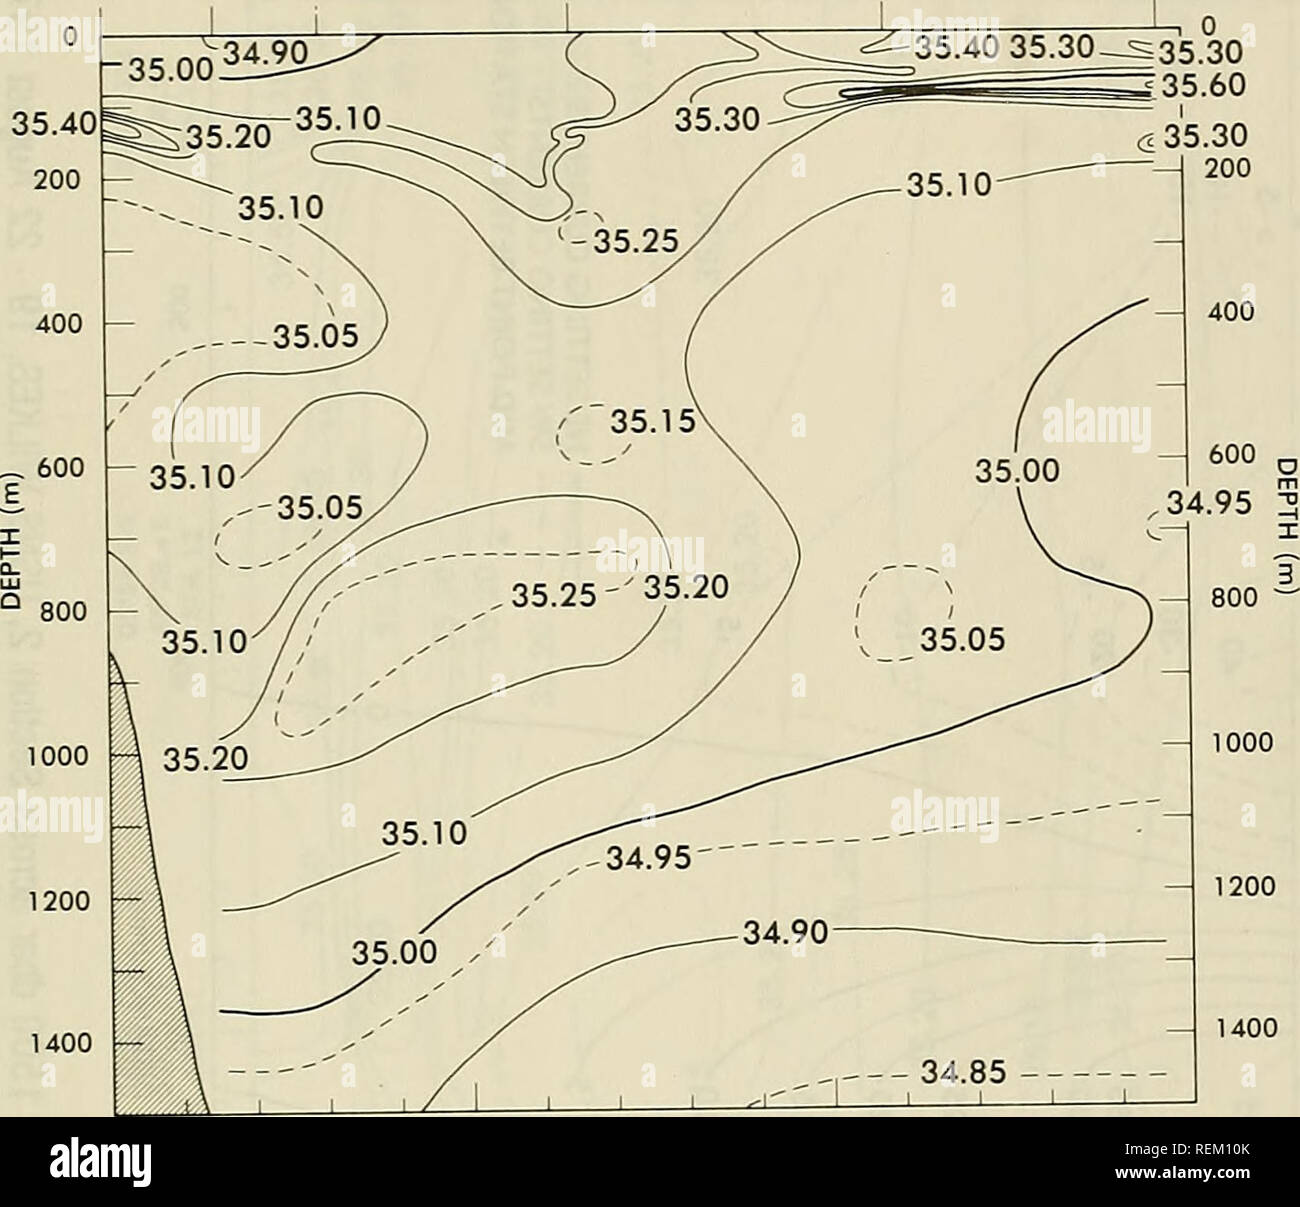 . Circolazione e proprietà oceanografiche nel bacino somalo come osservato durante il 1979 monsone sud-ovest. Oceanografia; correnti oceaniche; monsoni. 03° 56,7' N 03°35.7N 03°07.5'N 02°13.0'N 48°07.6'E 48°26.rE 48°33.3'E 49"10.rE STA 6 STA 5 STA 4 STA 3 00°56.8'N 50"02.0"E STA 2 00"03.0' N 50°54.1'E STA 1. 100 200 la distanza (NMI) Figura 37. Salinities ("/oo) lungo la sezione 1, Numeri usn documento Wilkes, 16-19 Agosto 1979 61. Si prega di notare che queste immagini vengono estratte dalla pagina sottoposta a scansione di immagini che possono essere state migliorate digitalmente per la leggibilità - Colorazione e aspetto di queste illustrazioni potrebbero non perfe Foto Stock